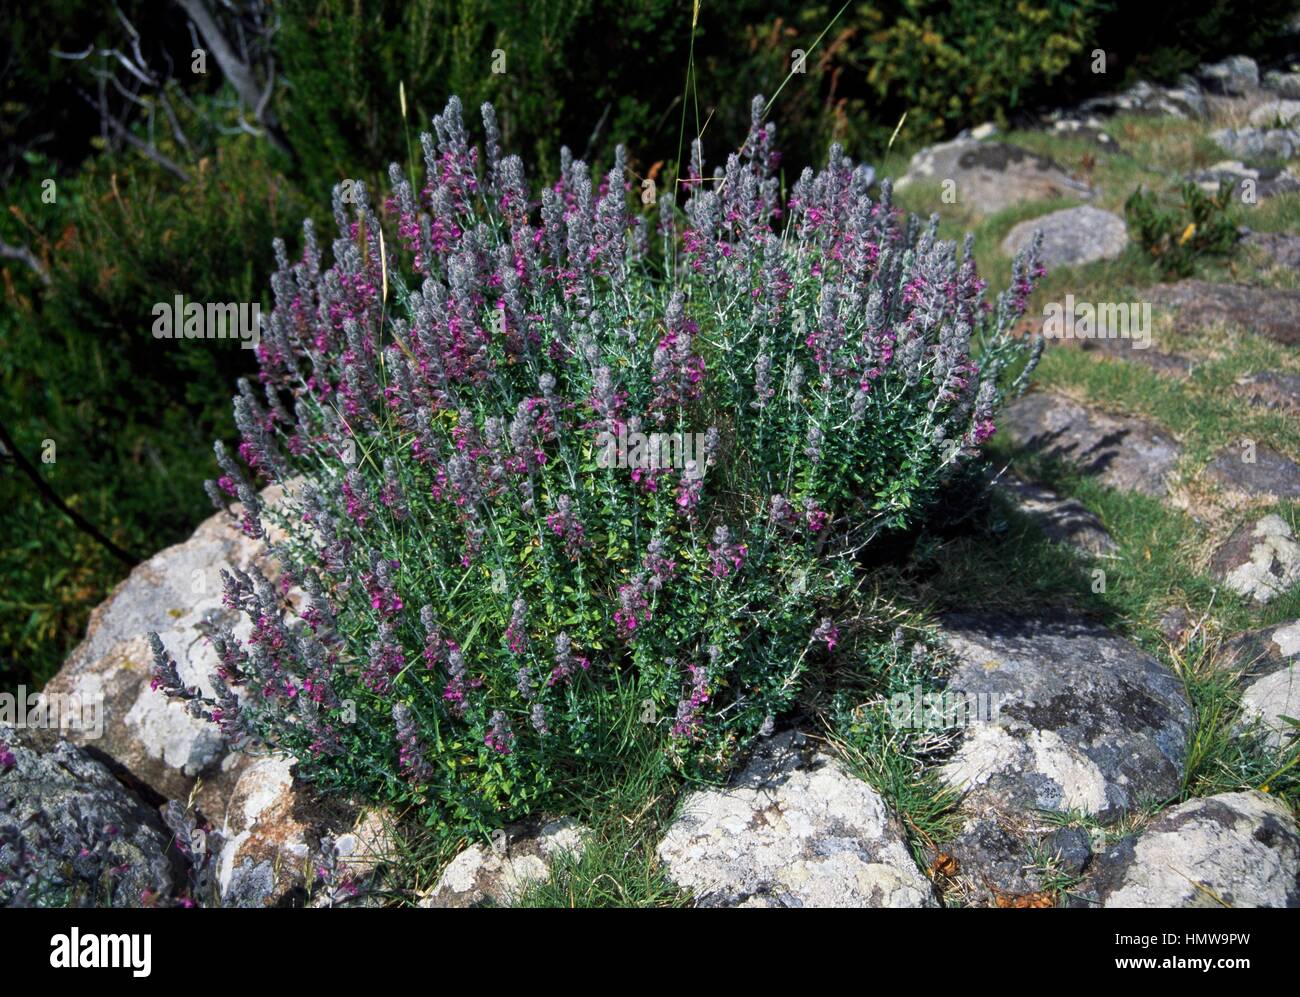 Cat thyme in bloom (Teucrium marum), Lamiaceae. Stock Photo